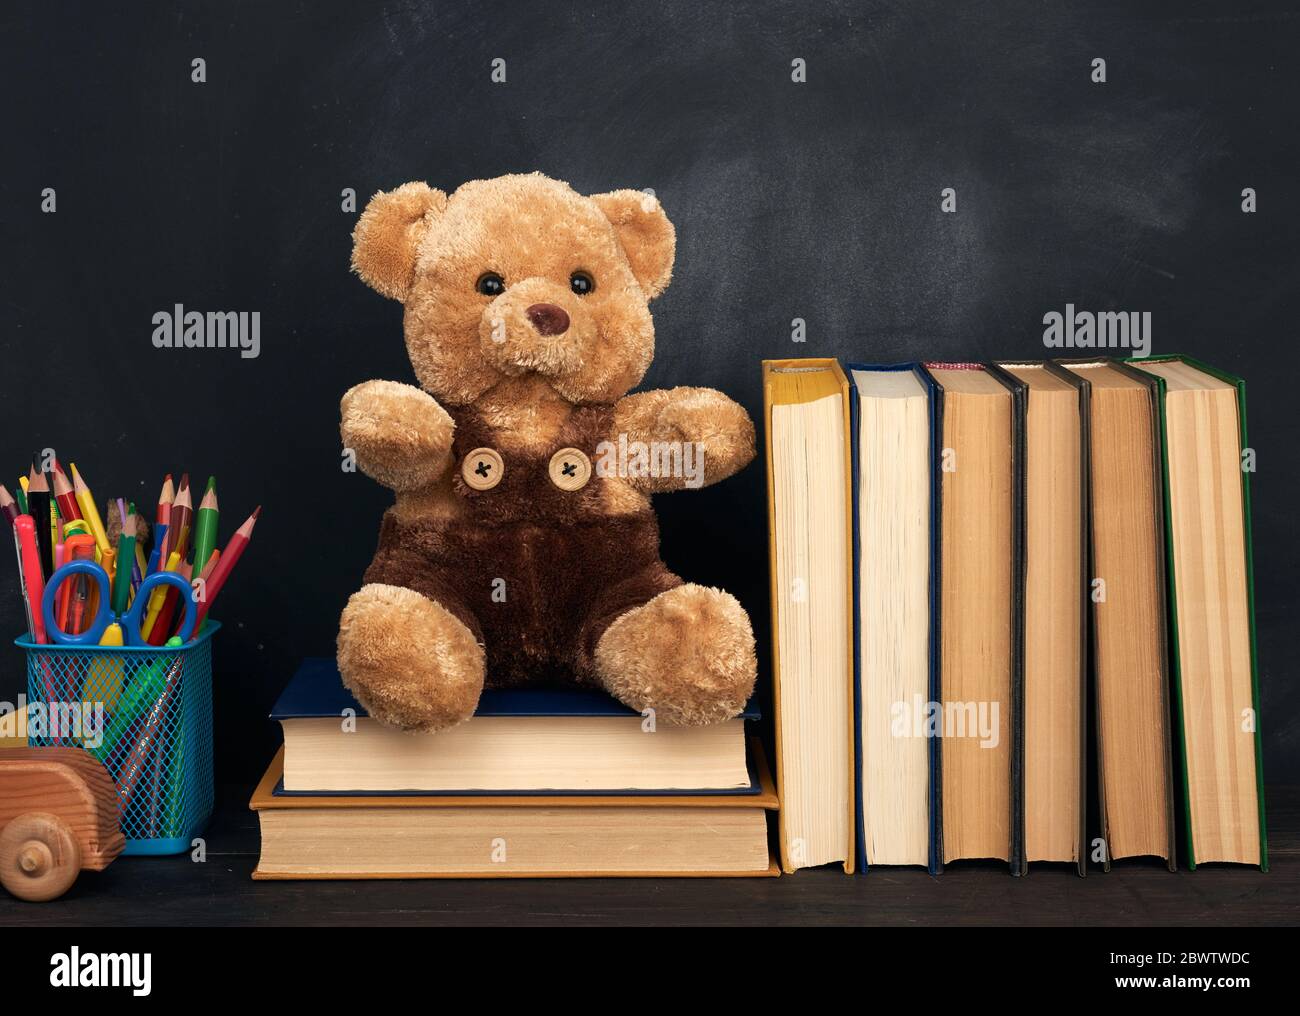 l'ours en peluche brun est assis sur une table en bois brun, derrière un tableau noir vide, pour rentrer à l'école Banque D'Images